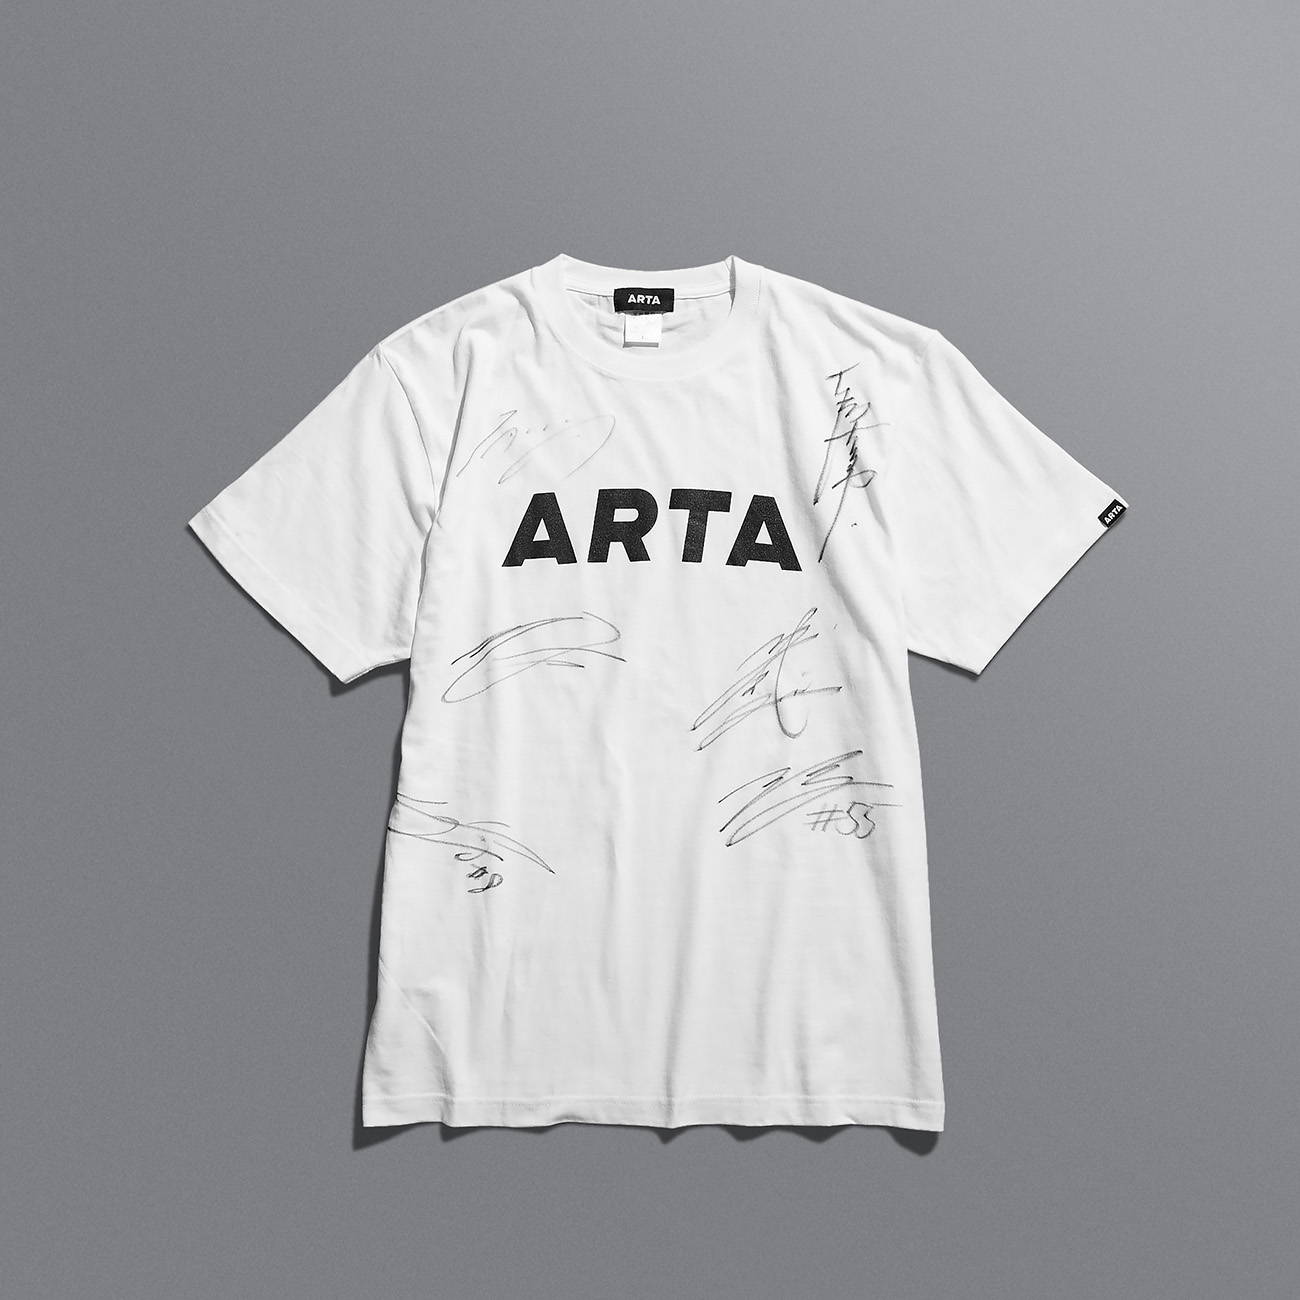 完売いたしました】ARTAチームメンバーサイン入りロゴTシャツ数量限定販売